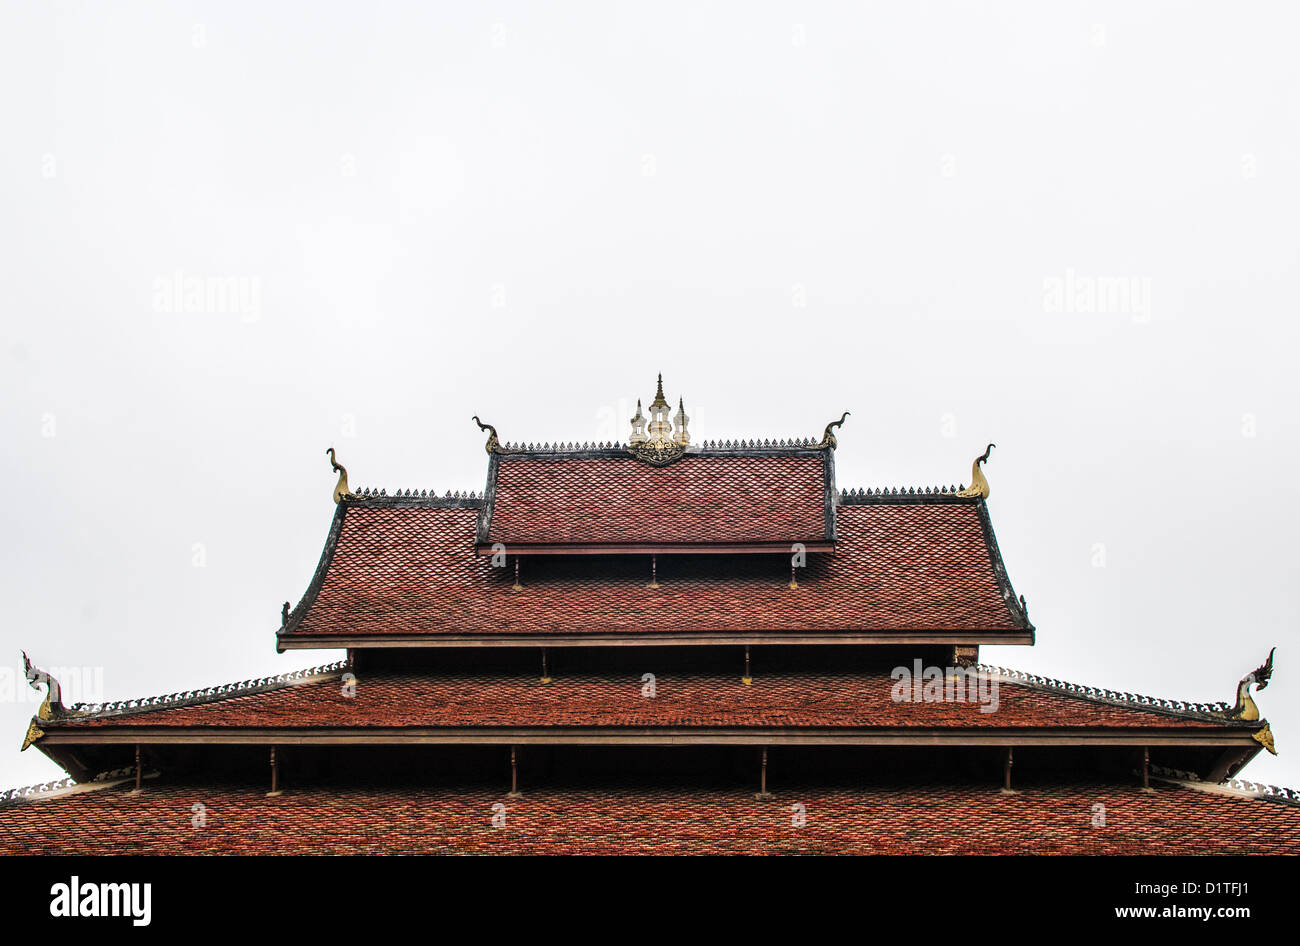 LUANG PRABANG, Laos - Die mehrschichtige, Fliesen- Dach eines Wat (buddhistischer Tempel) in Luang Prabang, Laos, gegen einen bewölkten Himmel. Die Punkte des Daches sind für chofah, eine Darstellung des Garuda, der halb Mensch halb geschmückt - Vogel Fahrzeug Der hindy Gott Vishnu. Stockfoto